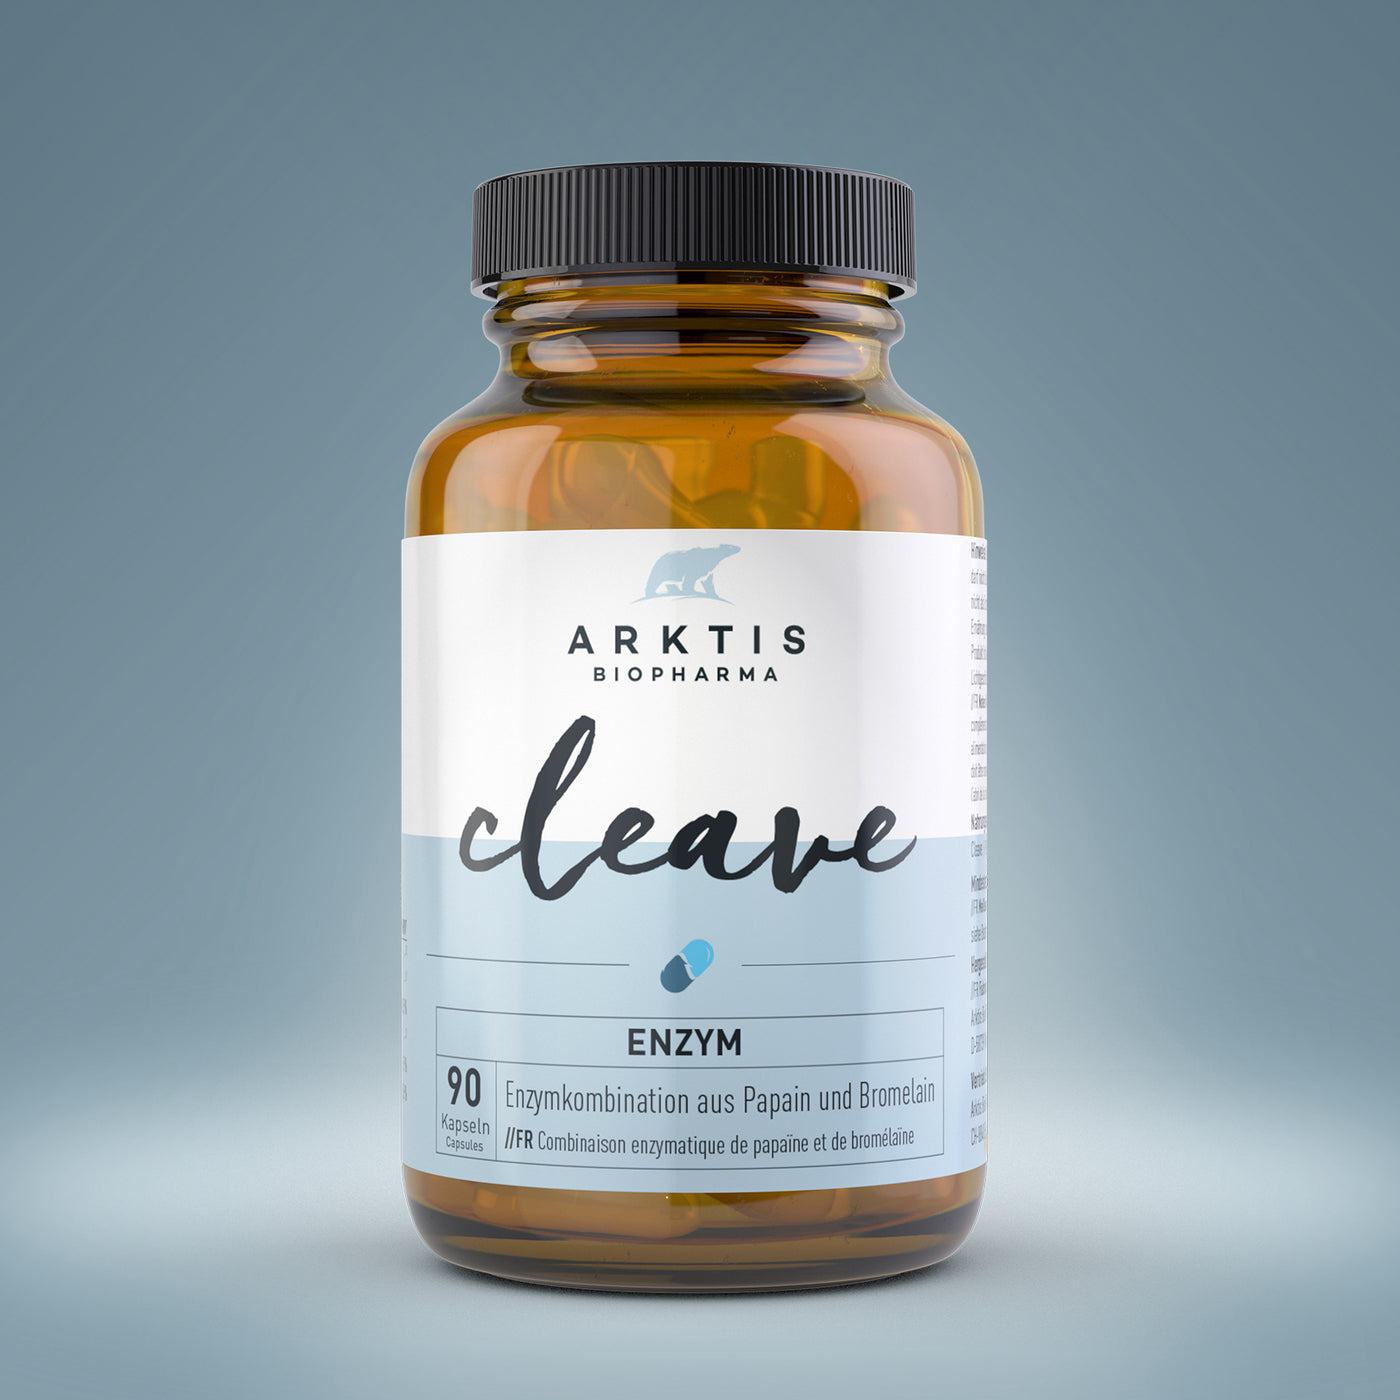 Arktis Cleave - Enzyme